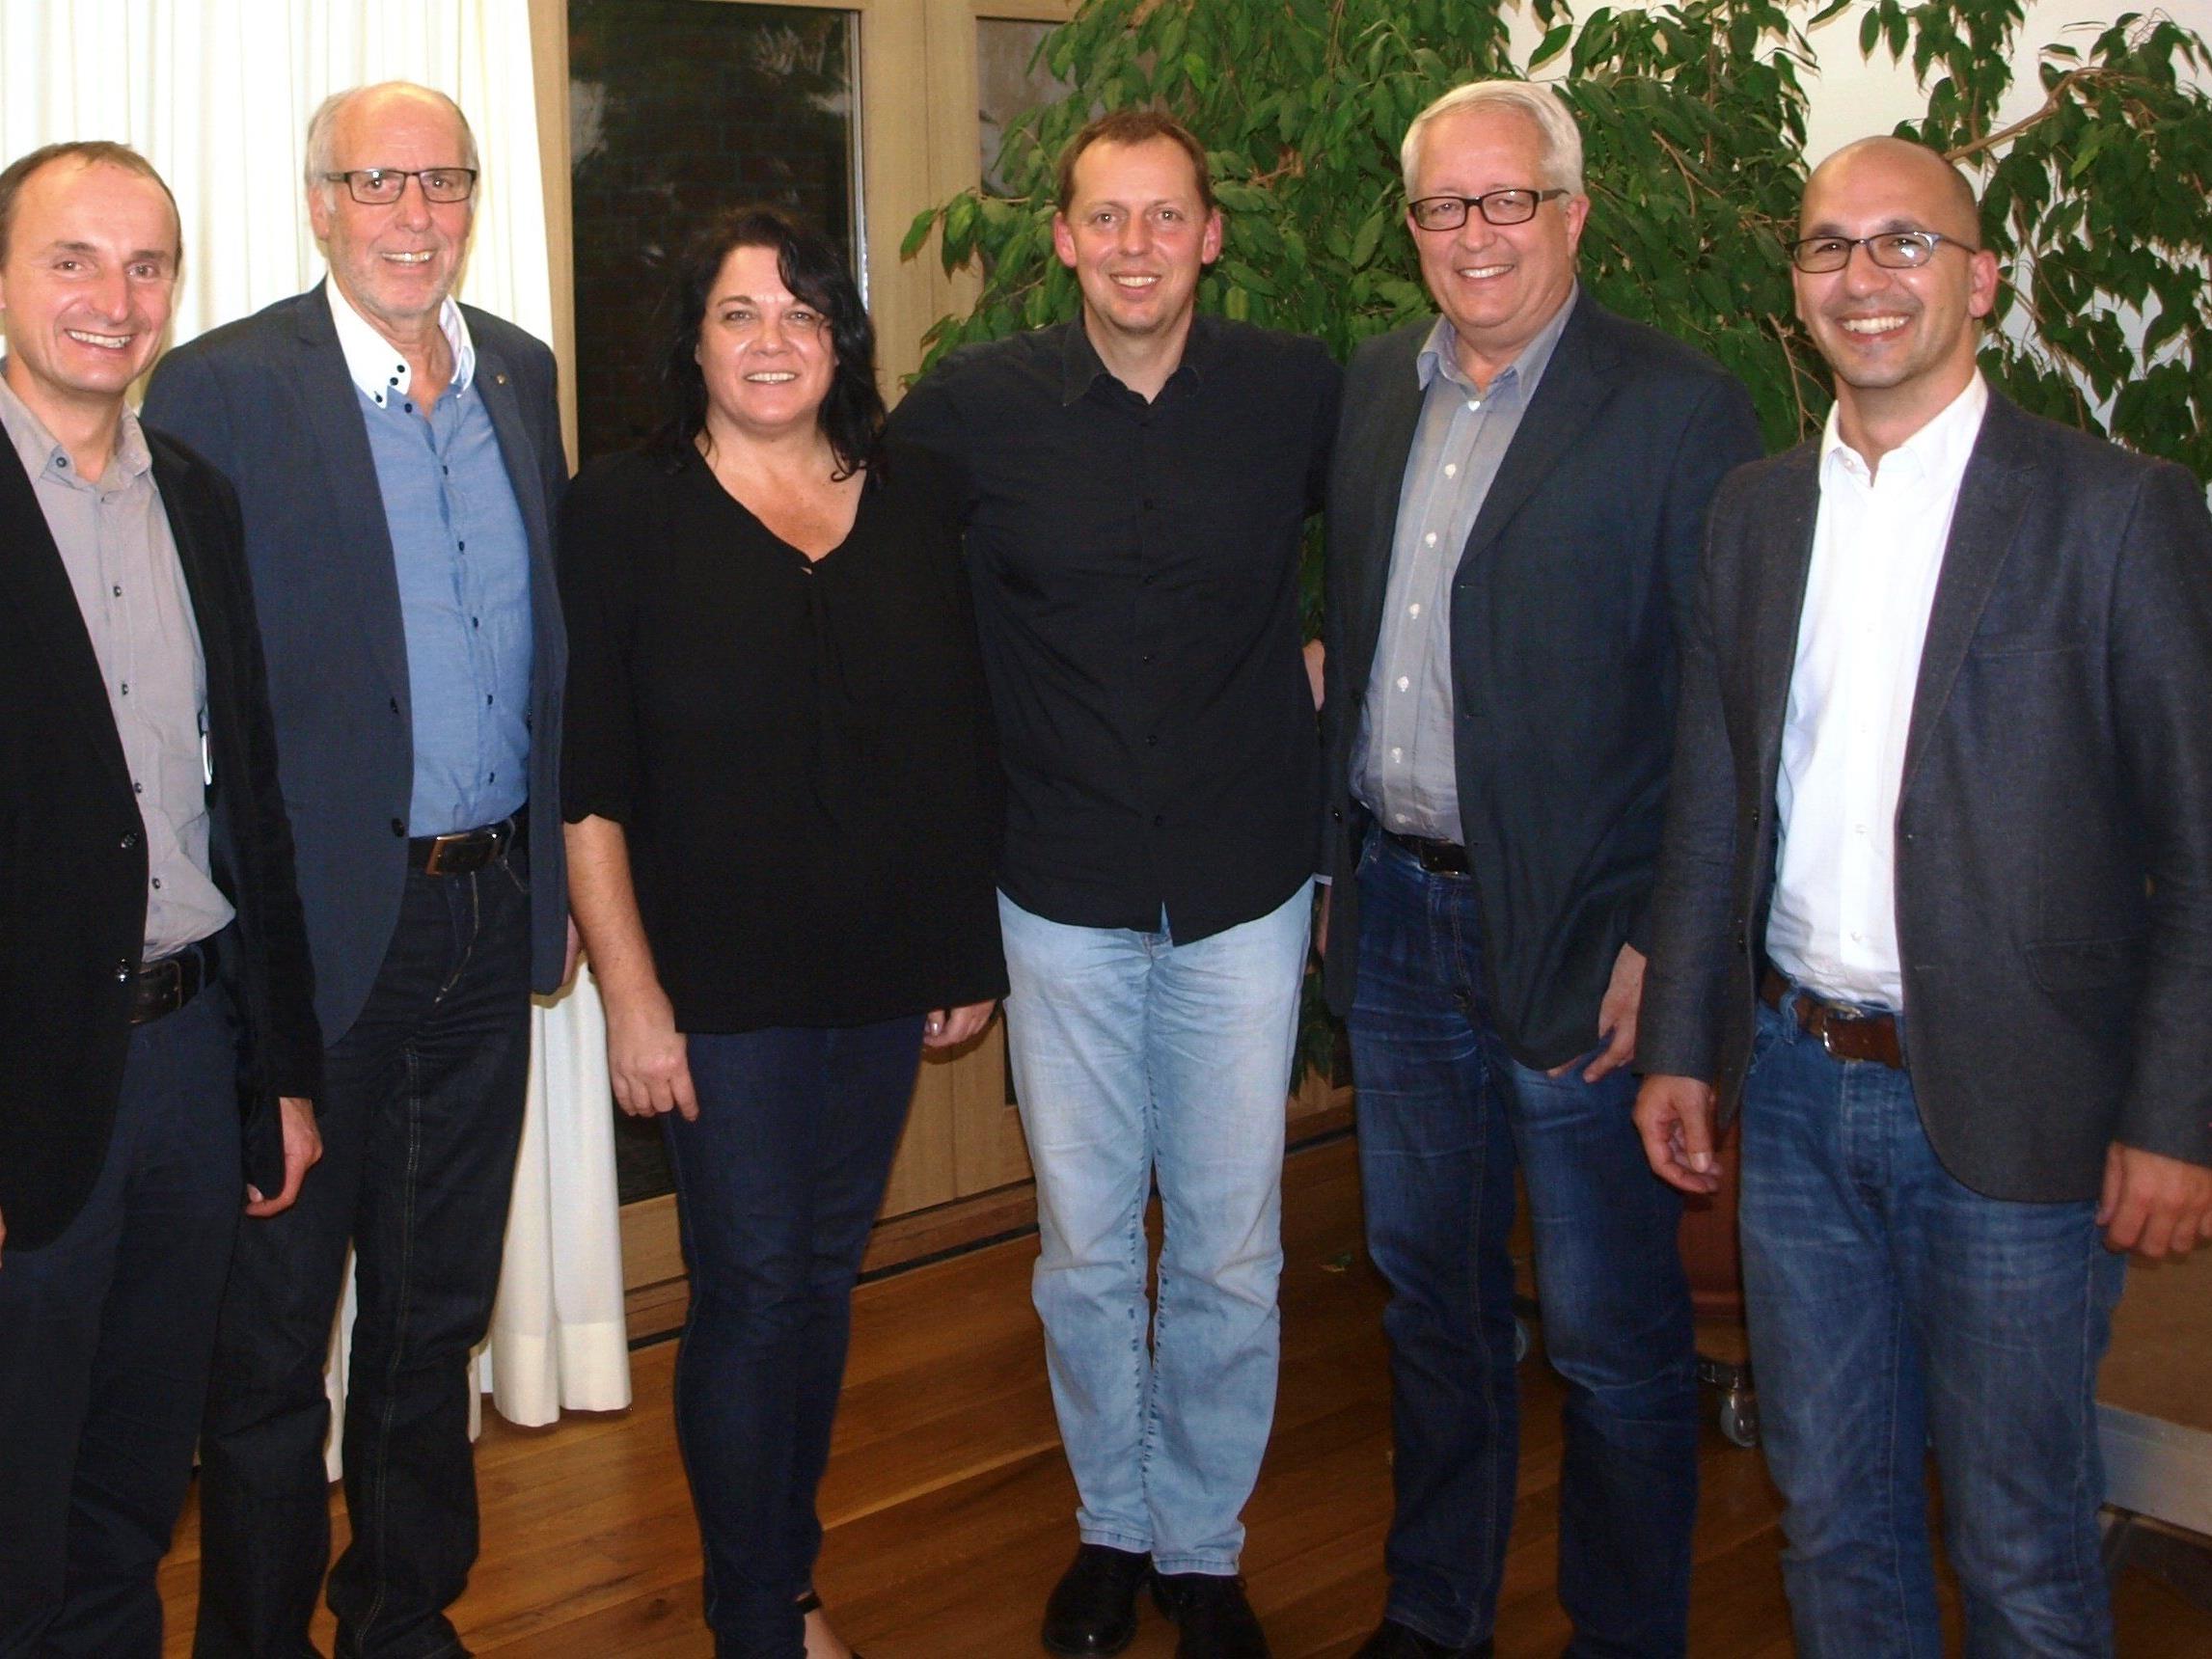 Sie freuten sich über einen bestens gelungenen Abend: Bgm. Alfons Rädler, Elmar Marent, Manuela Hack, Kabarettist Ingo Vogl, Bgm. Michael Simma, Thomas Winzek, von links nach rechts.